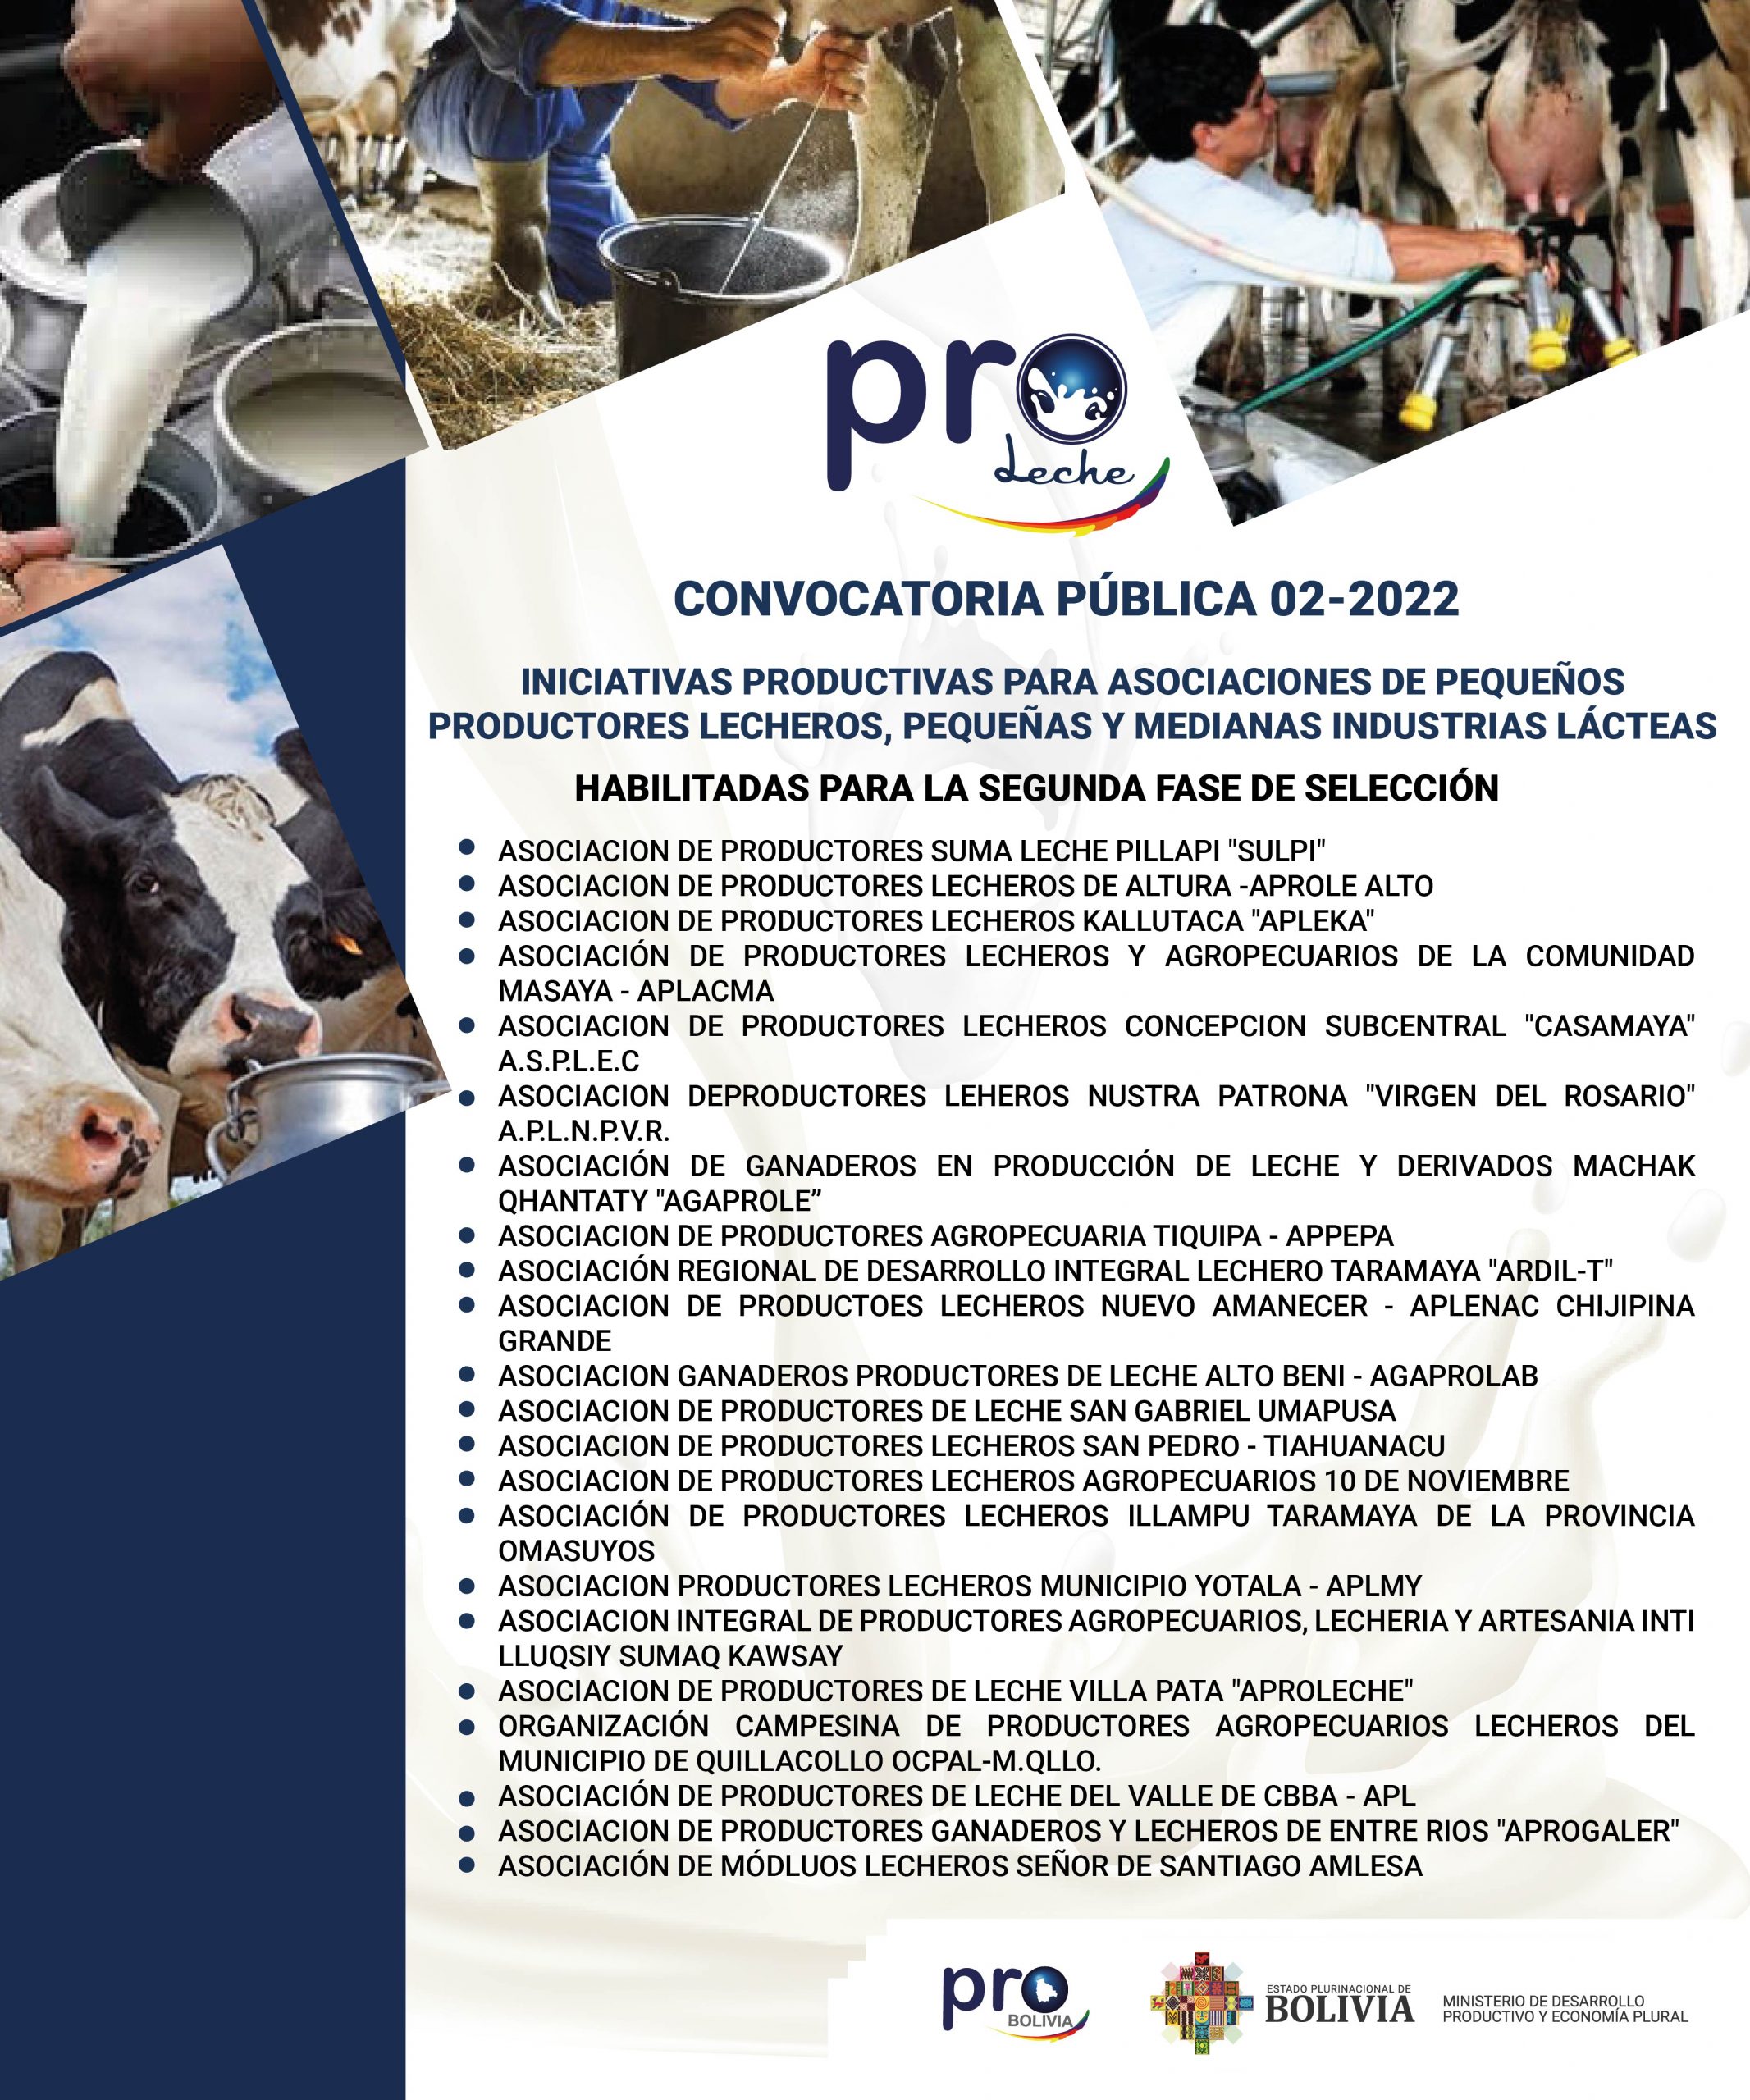 Iniciativas Productivas Habilitadas para la Segunda Fase de selección de la CONVOCATORIA 02/2022 PROLECHE